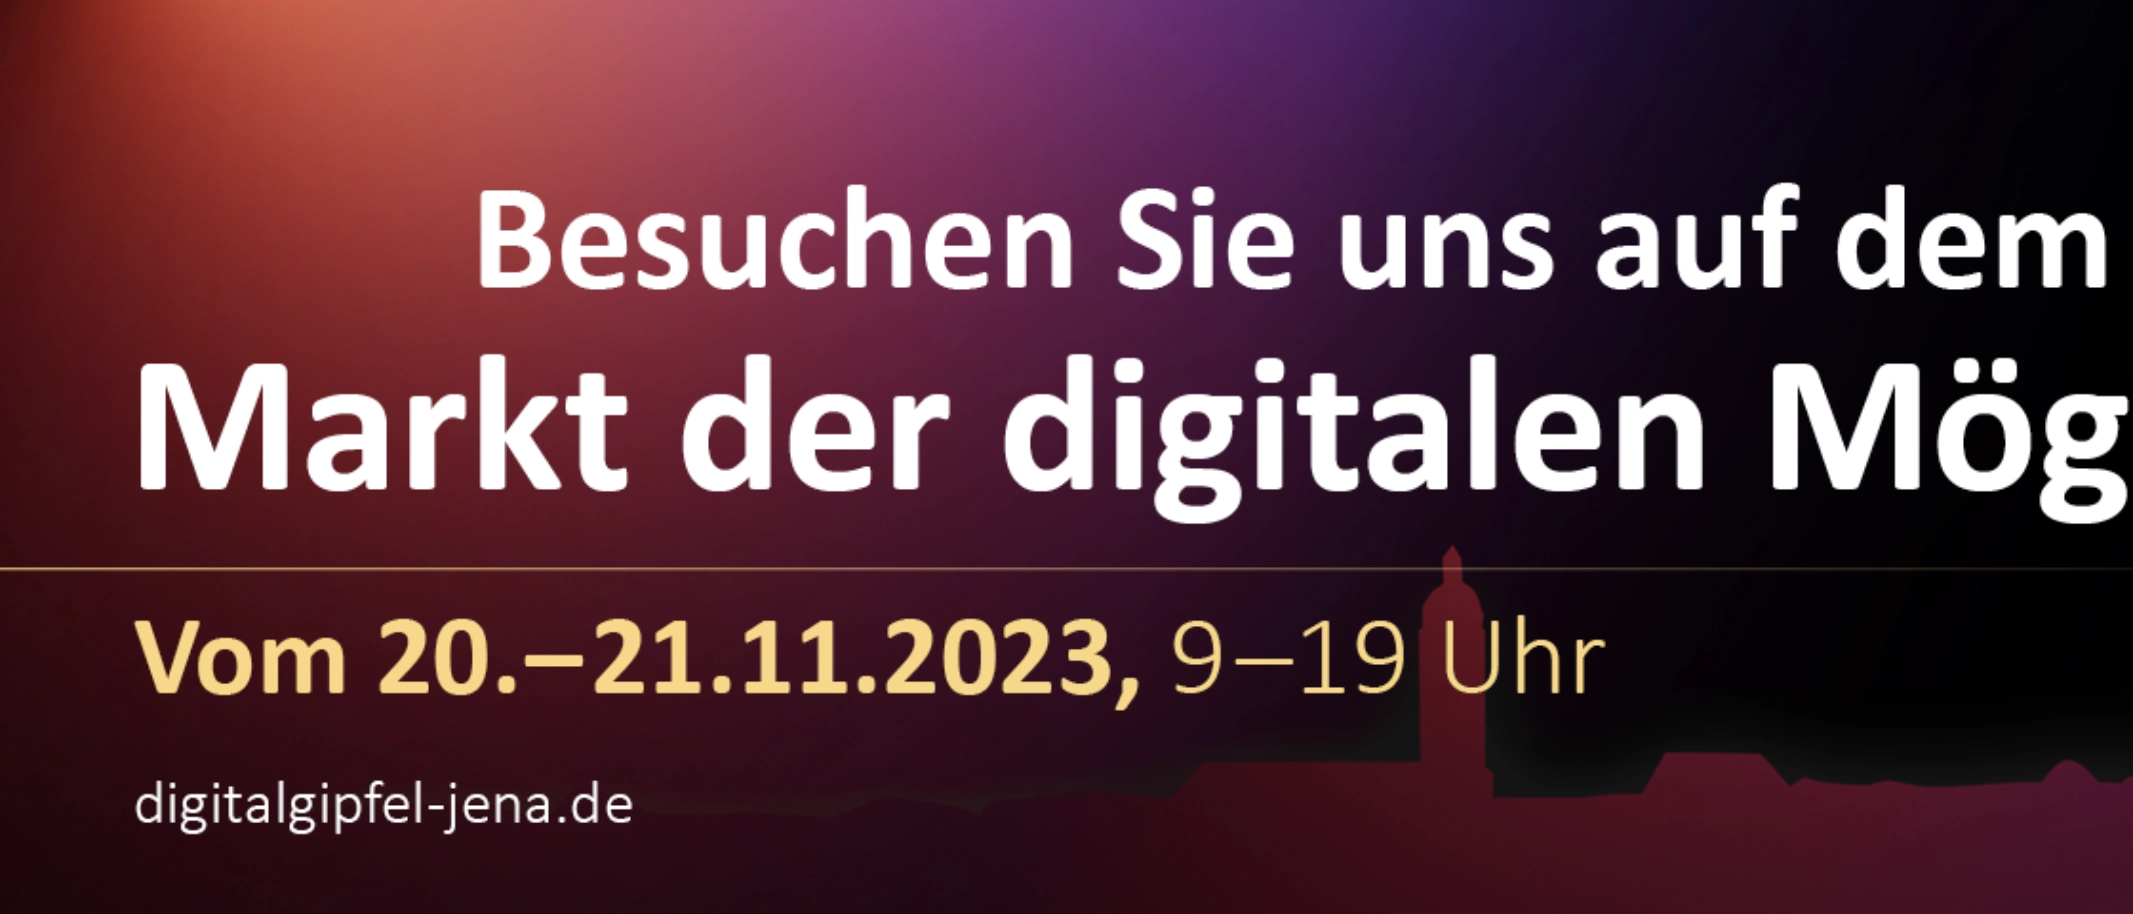 Der Markt der digitalen Möglichkeiten ist das Rahmenprogramm zum Digital-Gipfel der Bundesregierung am 20. und 21.11.2023 in Jena